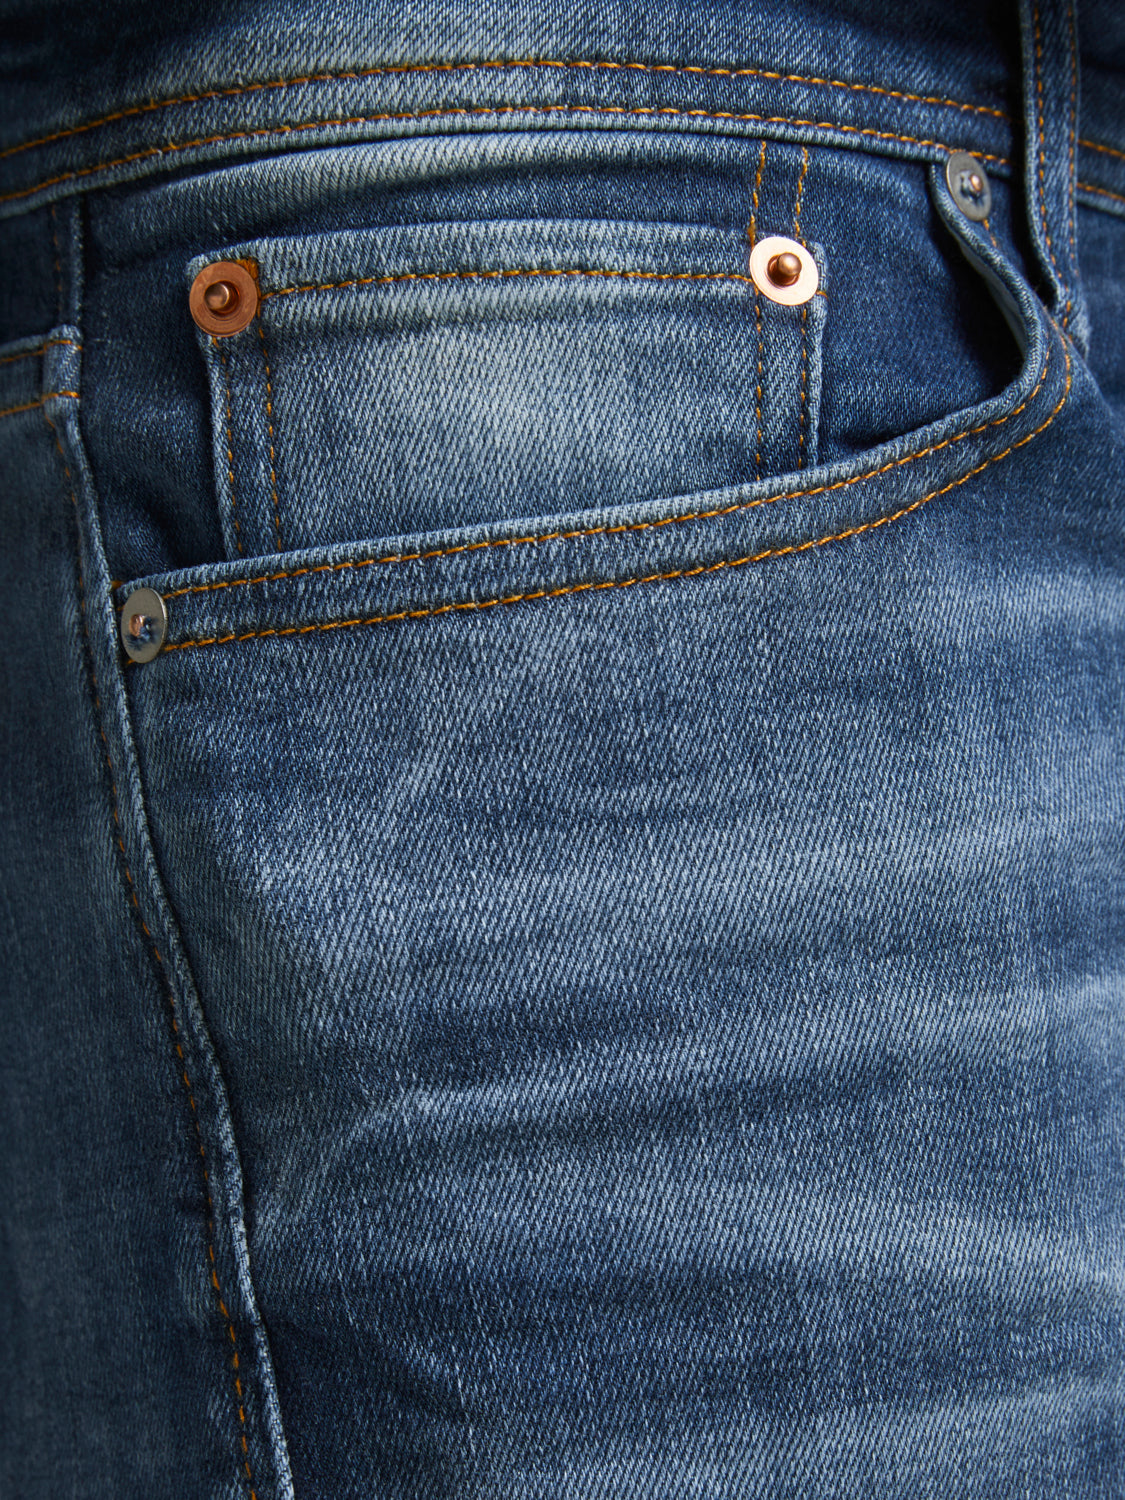 JJIMIKE Jeans - Blue Denim